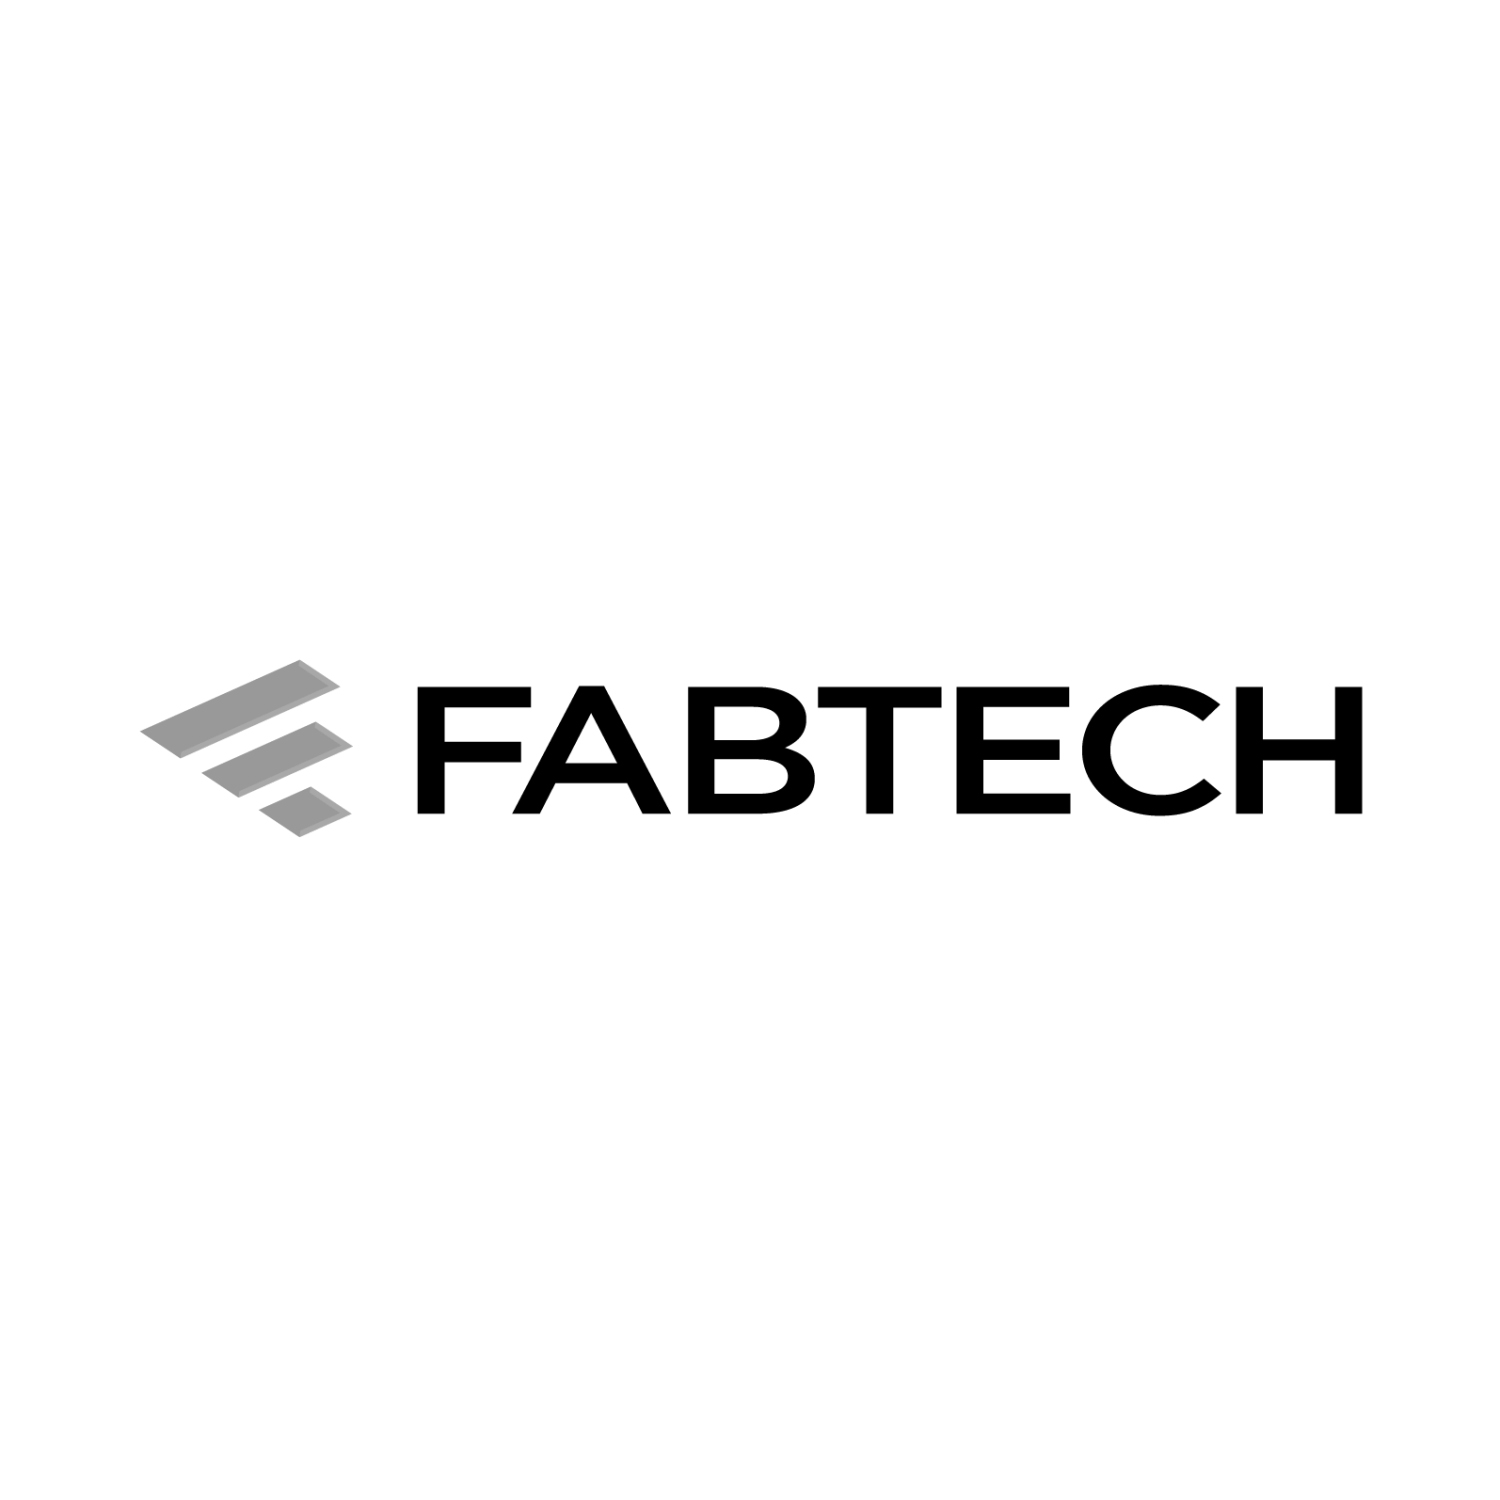 FabTech logo